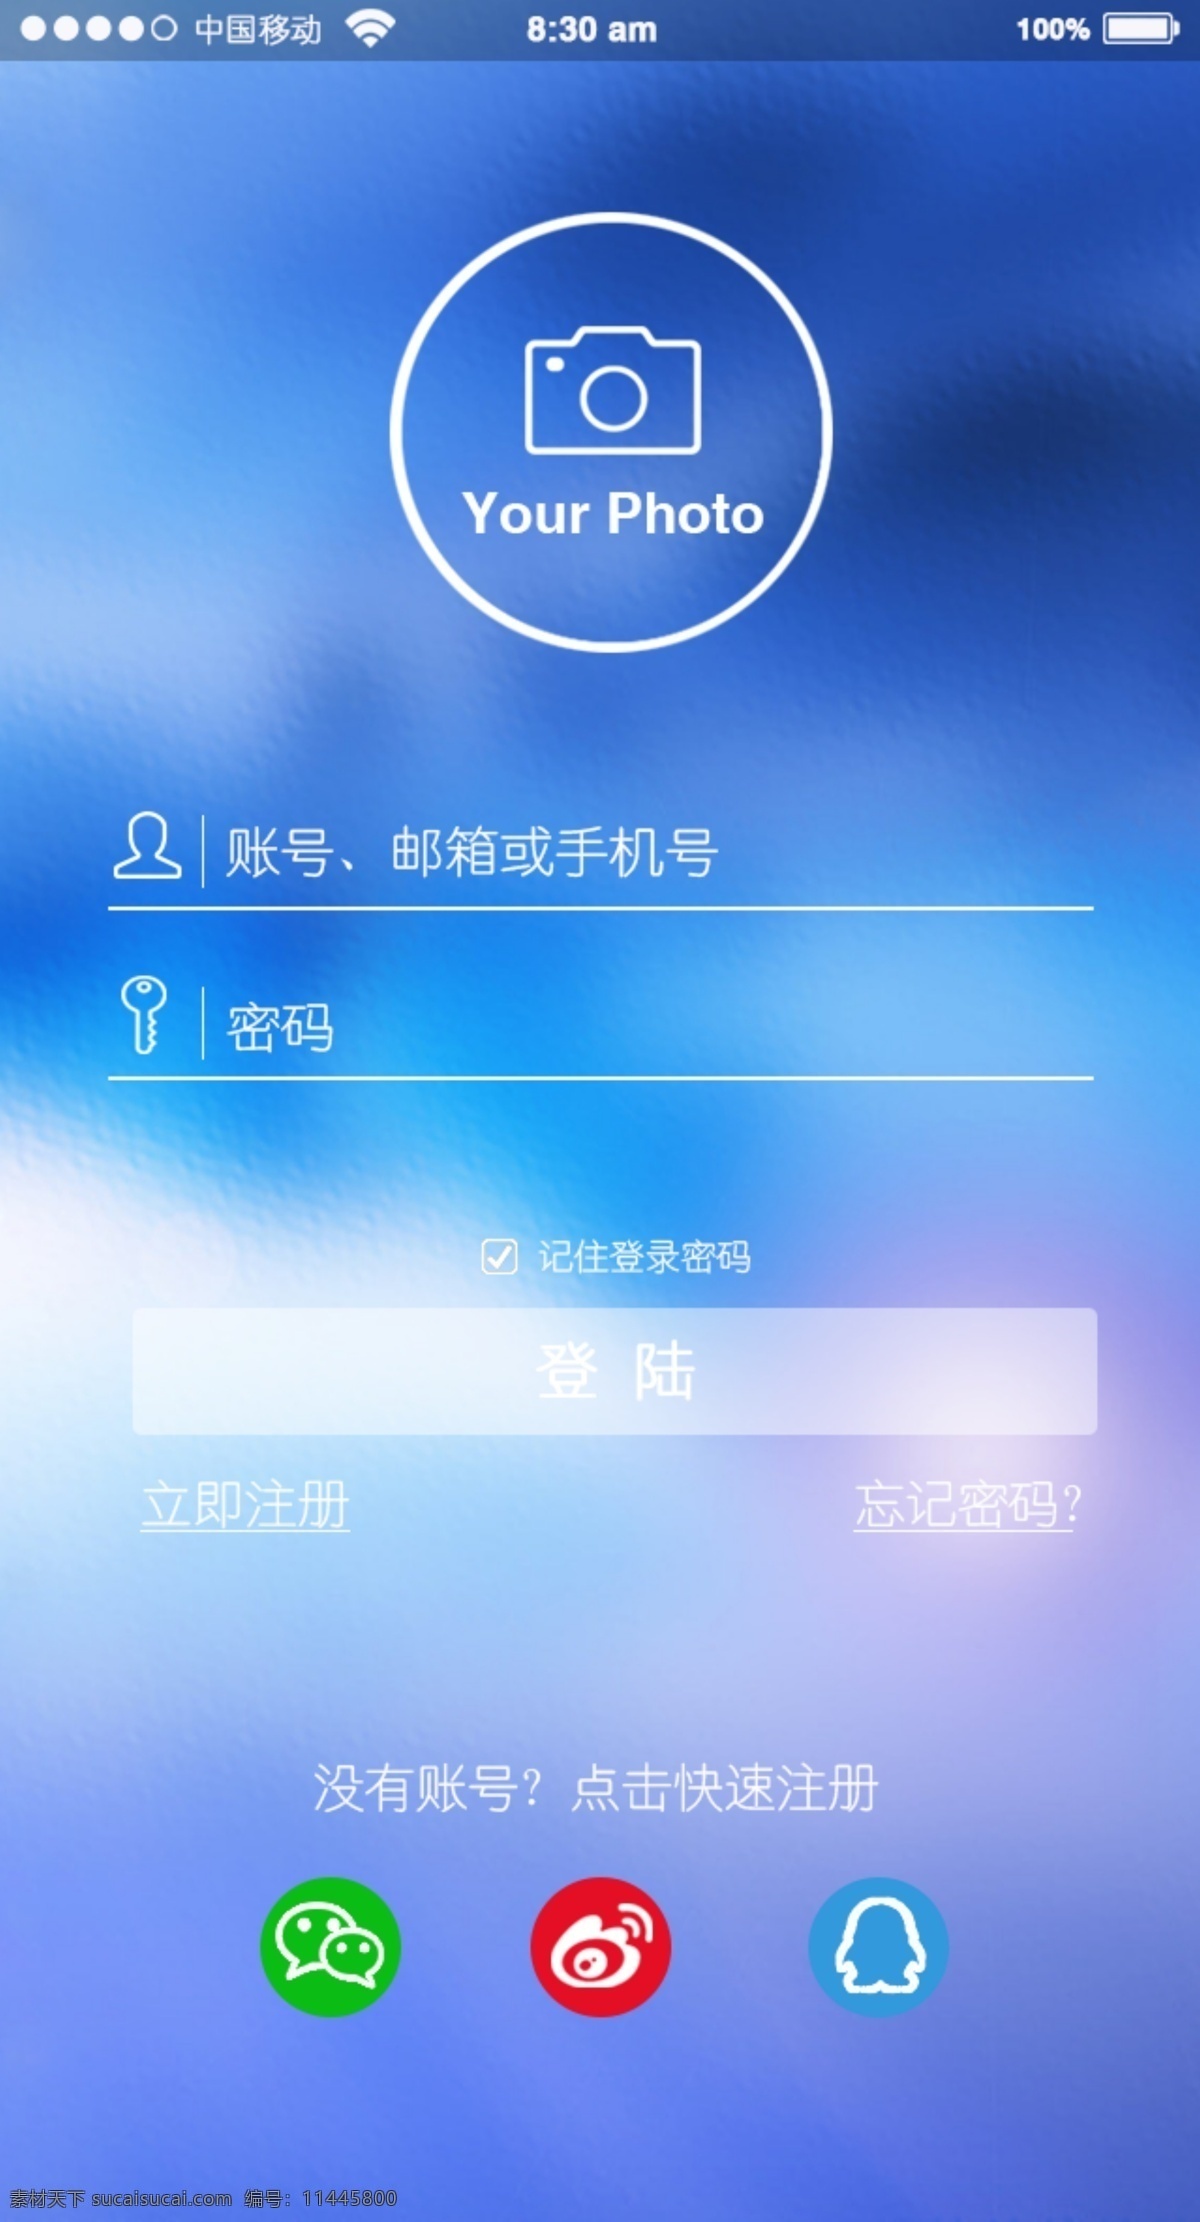 手机 登陆 页面 app 交互 高清 模板 设计素材 医疗 手机登录页面 高清图片素 模板设计 蓝色背景